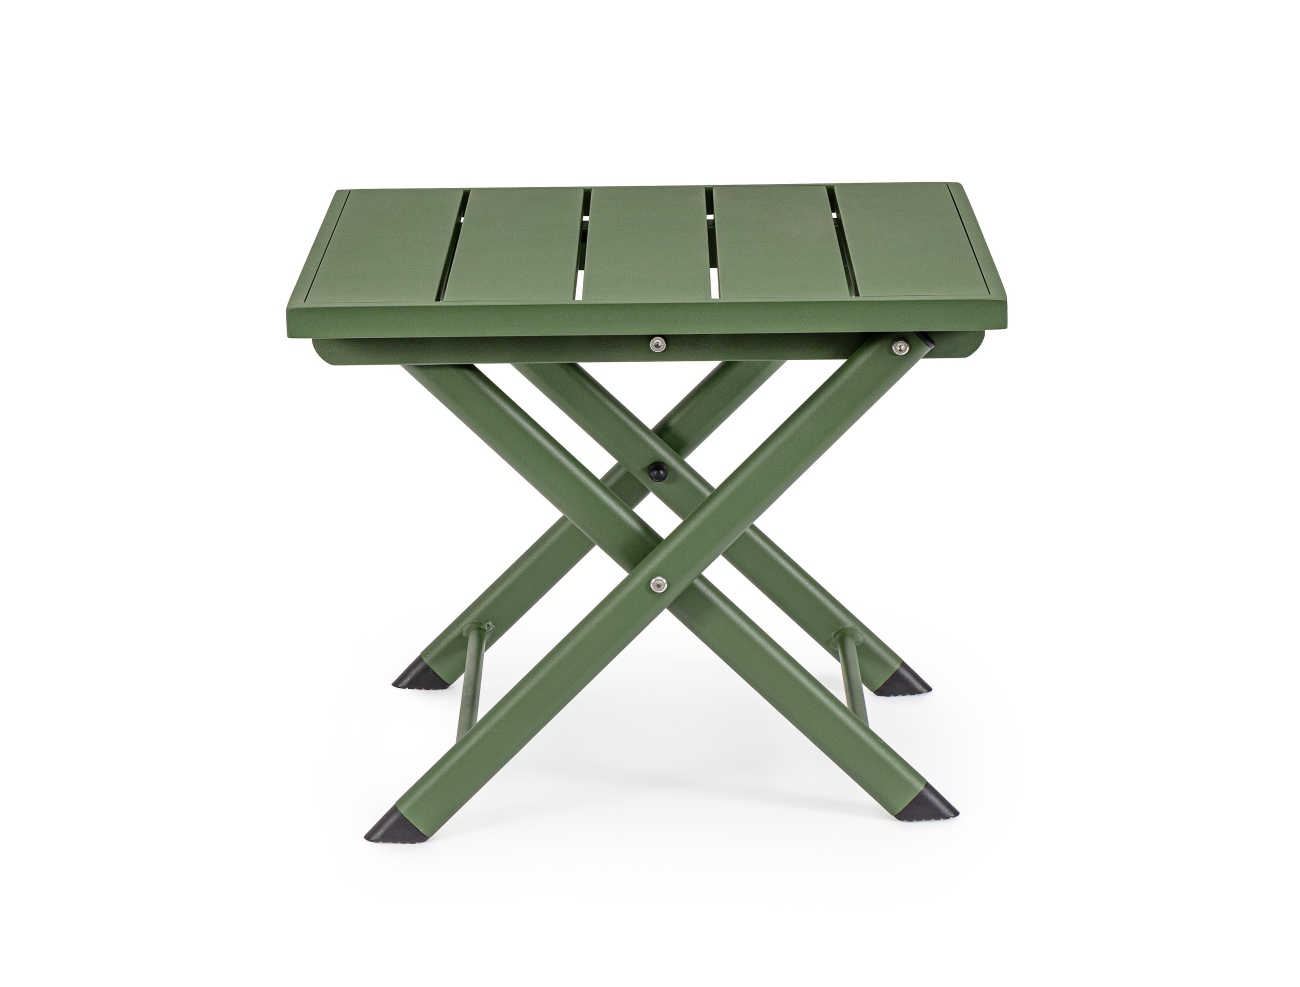 Der Gartenbeistelltisch Taylor überzeugt mit seinem modernen Design. Gefertigt wurde er aus Aluminium, welches einen grünen Farbton besitzt. Das Gestell ist auch aus Aluminium. Der Tisch besitzt eine Größe von 44x43 cm. Der Tisch ist klappbar.